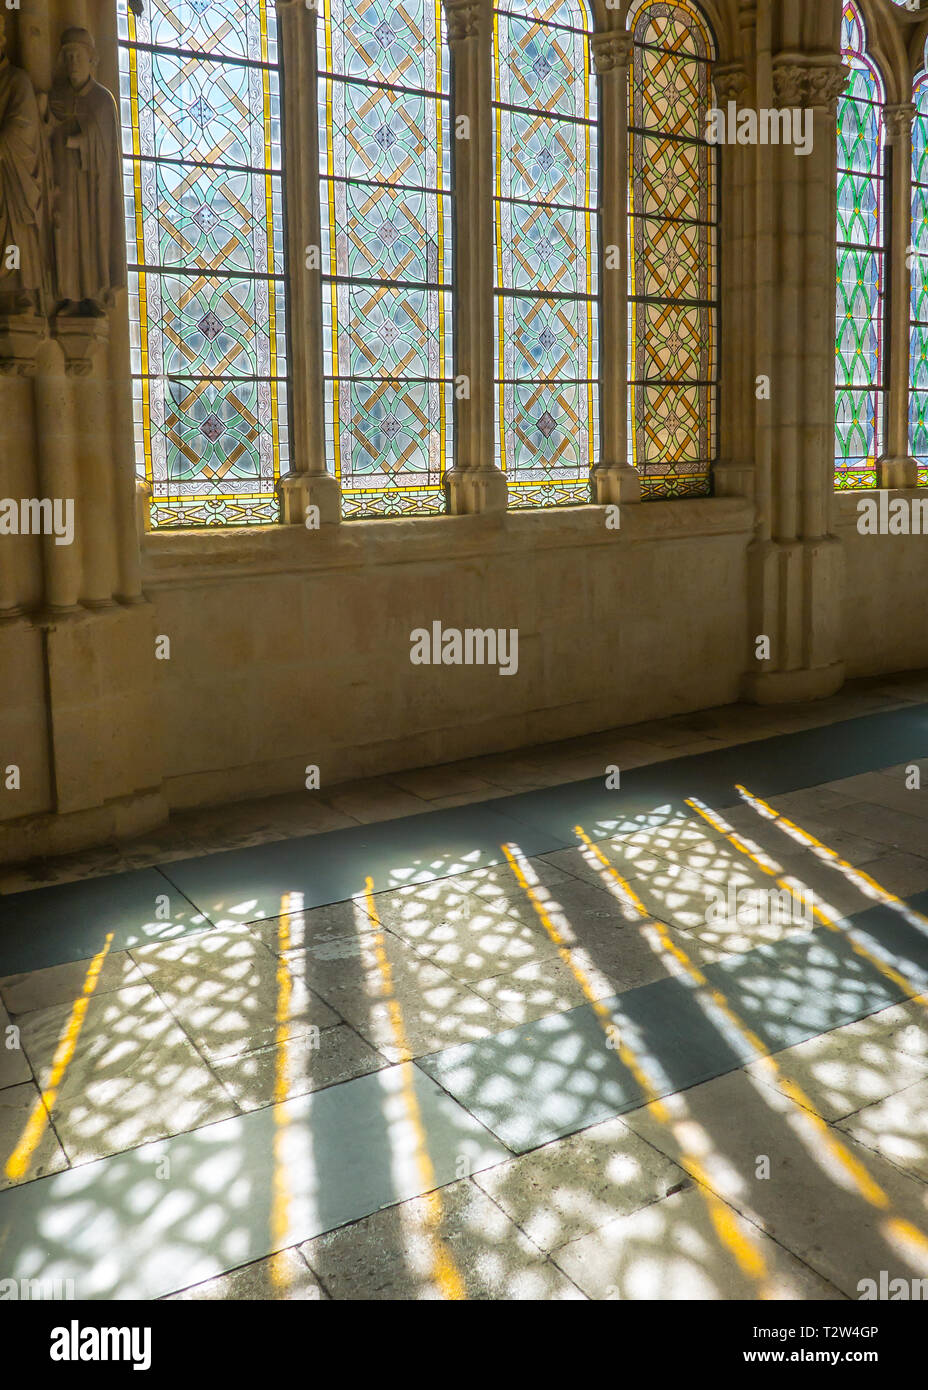 Sombras en el suelo del claustro de la catedral de Burgos, España Foto de stock